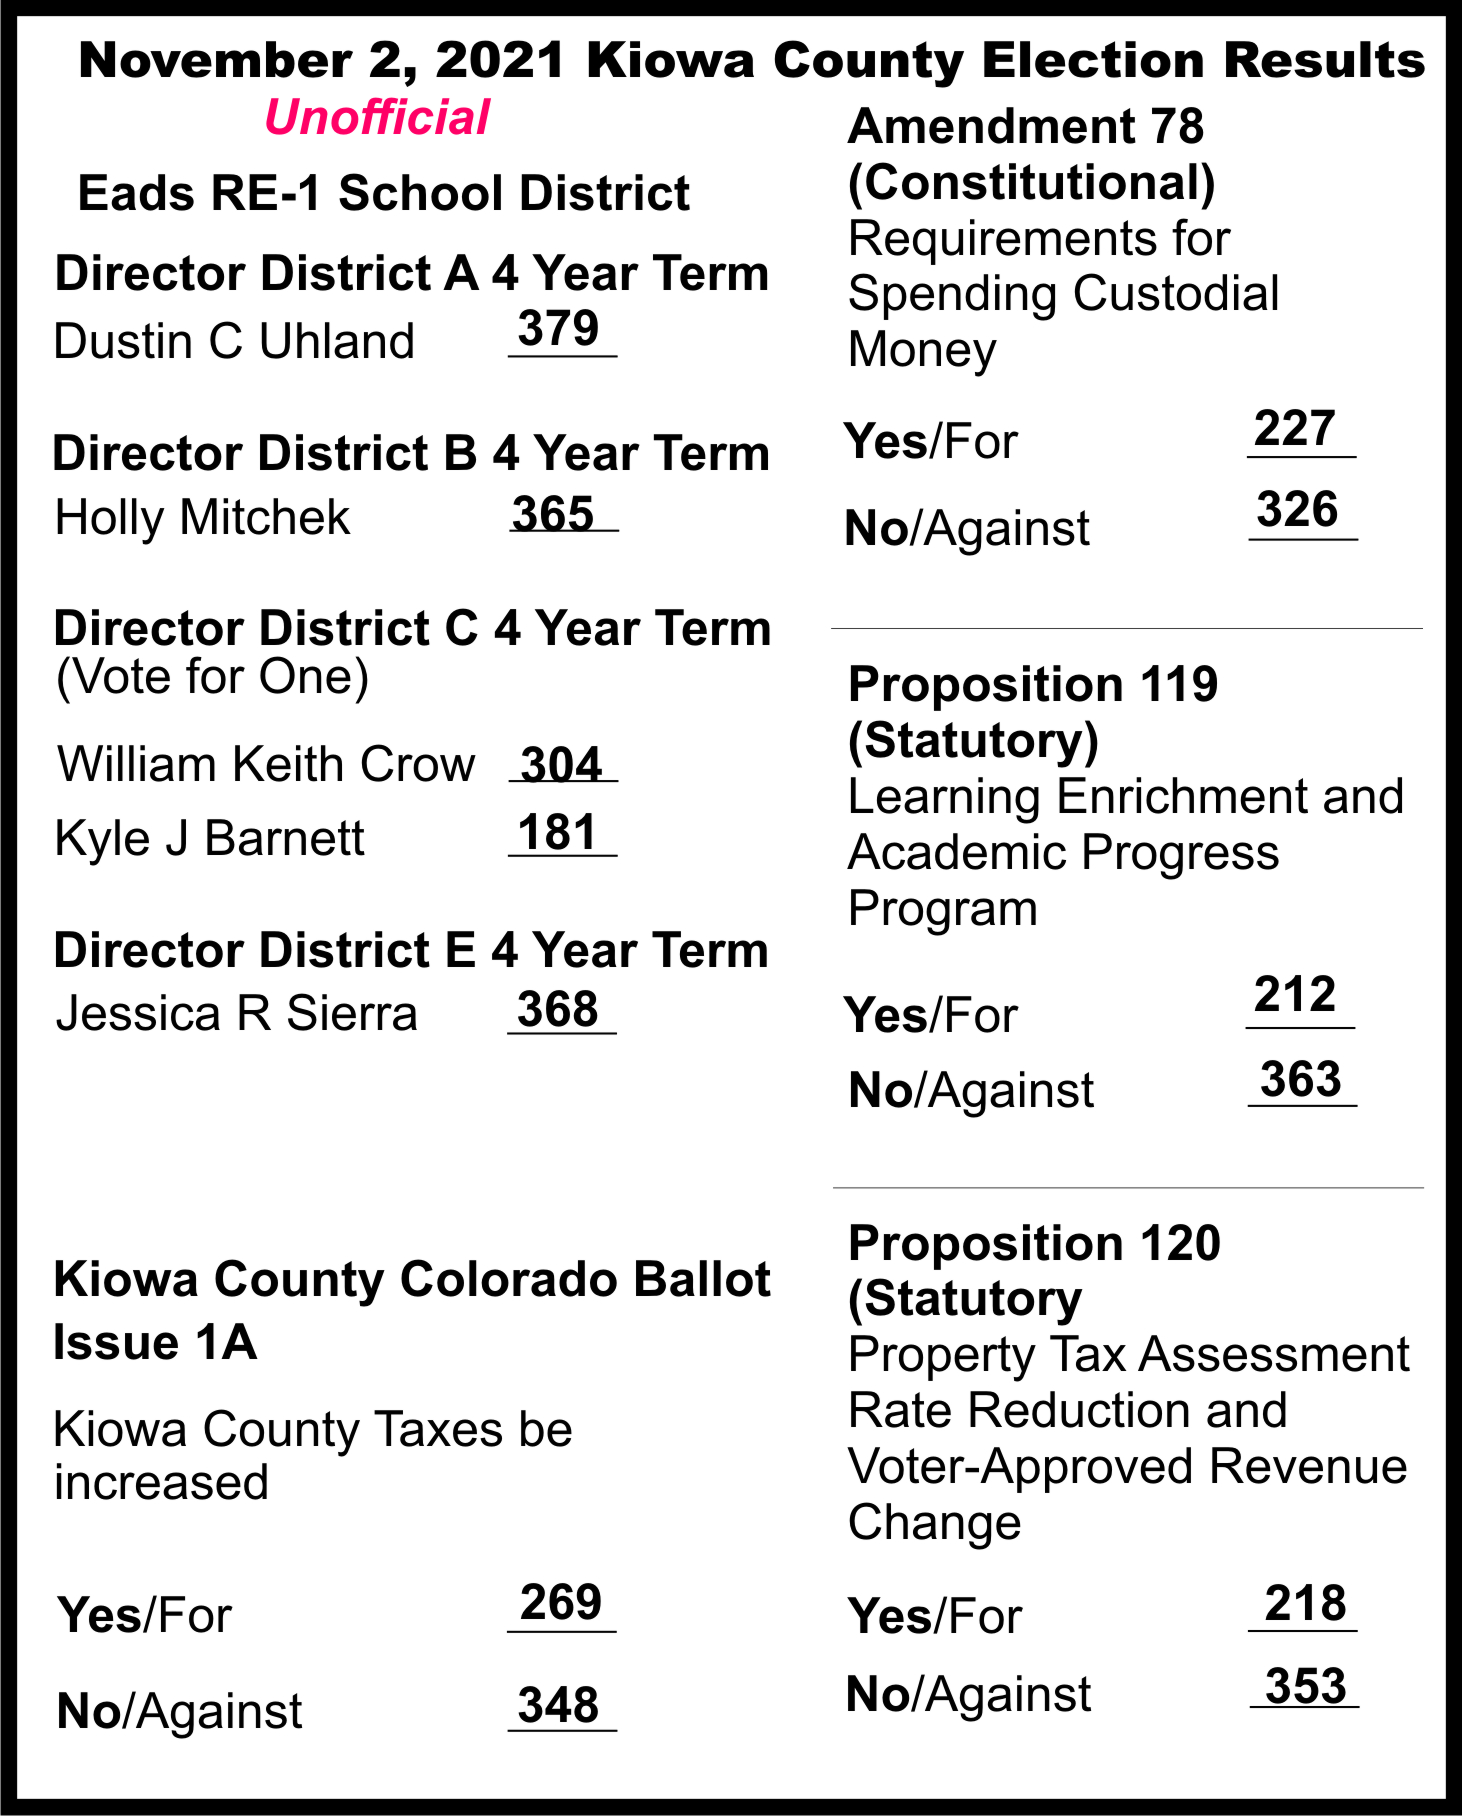 Kiowa County election results - November 2, 2021